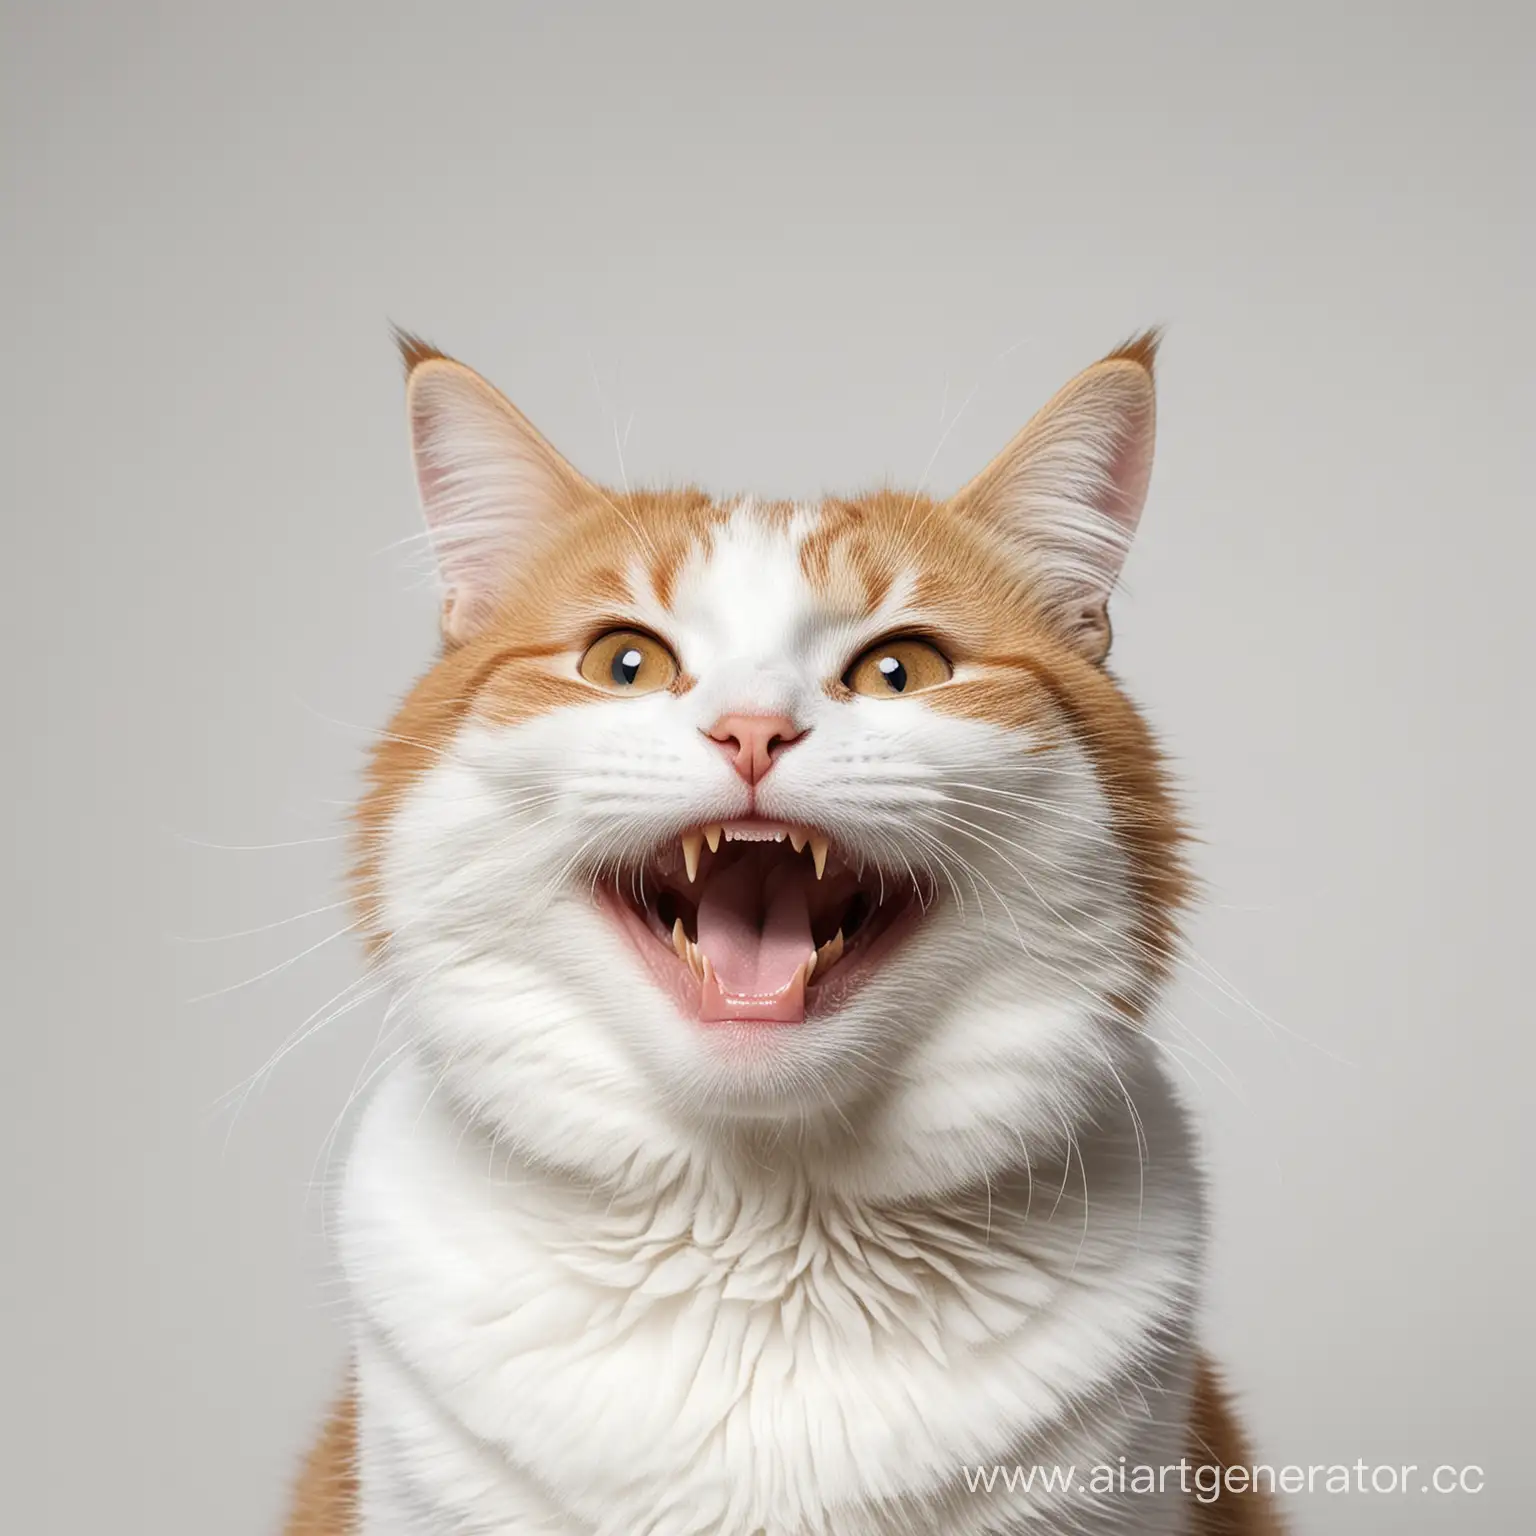 довольный очень радостный улыбающийся кот на белом фоне